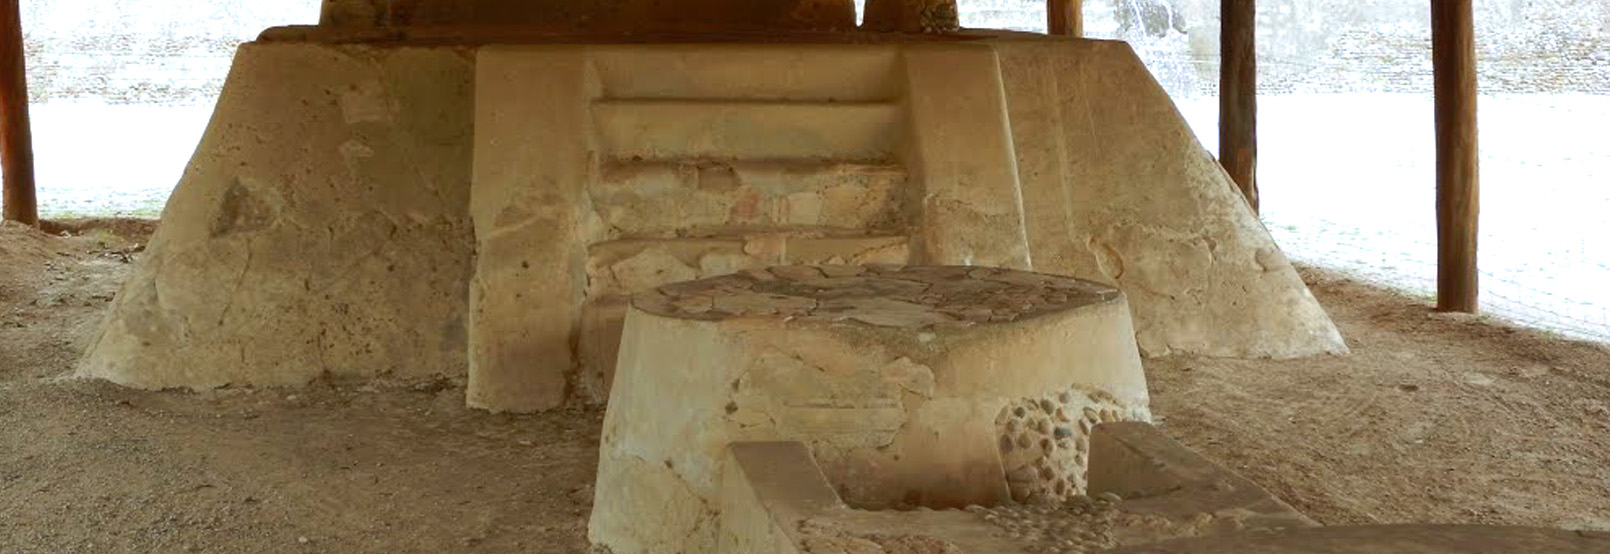 Arqueología San Luis Potosí 2